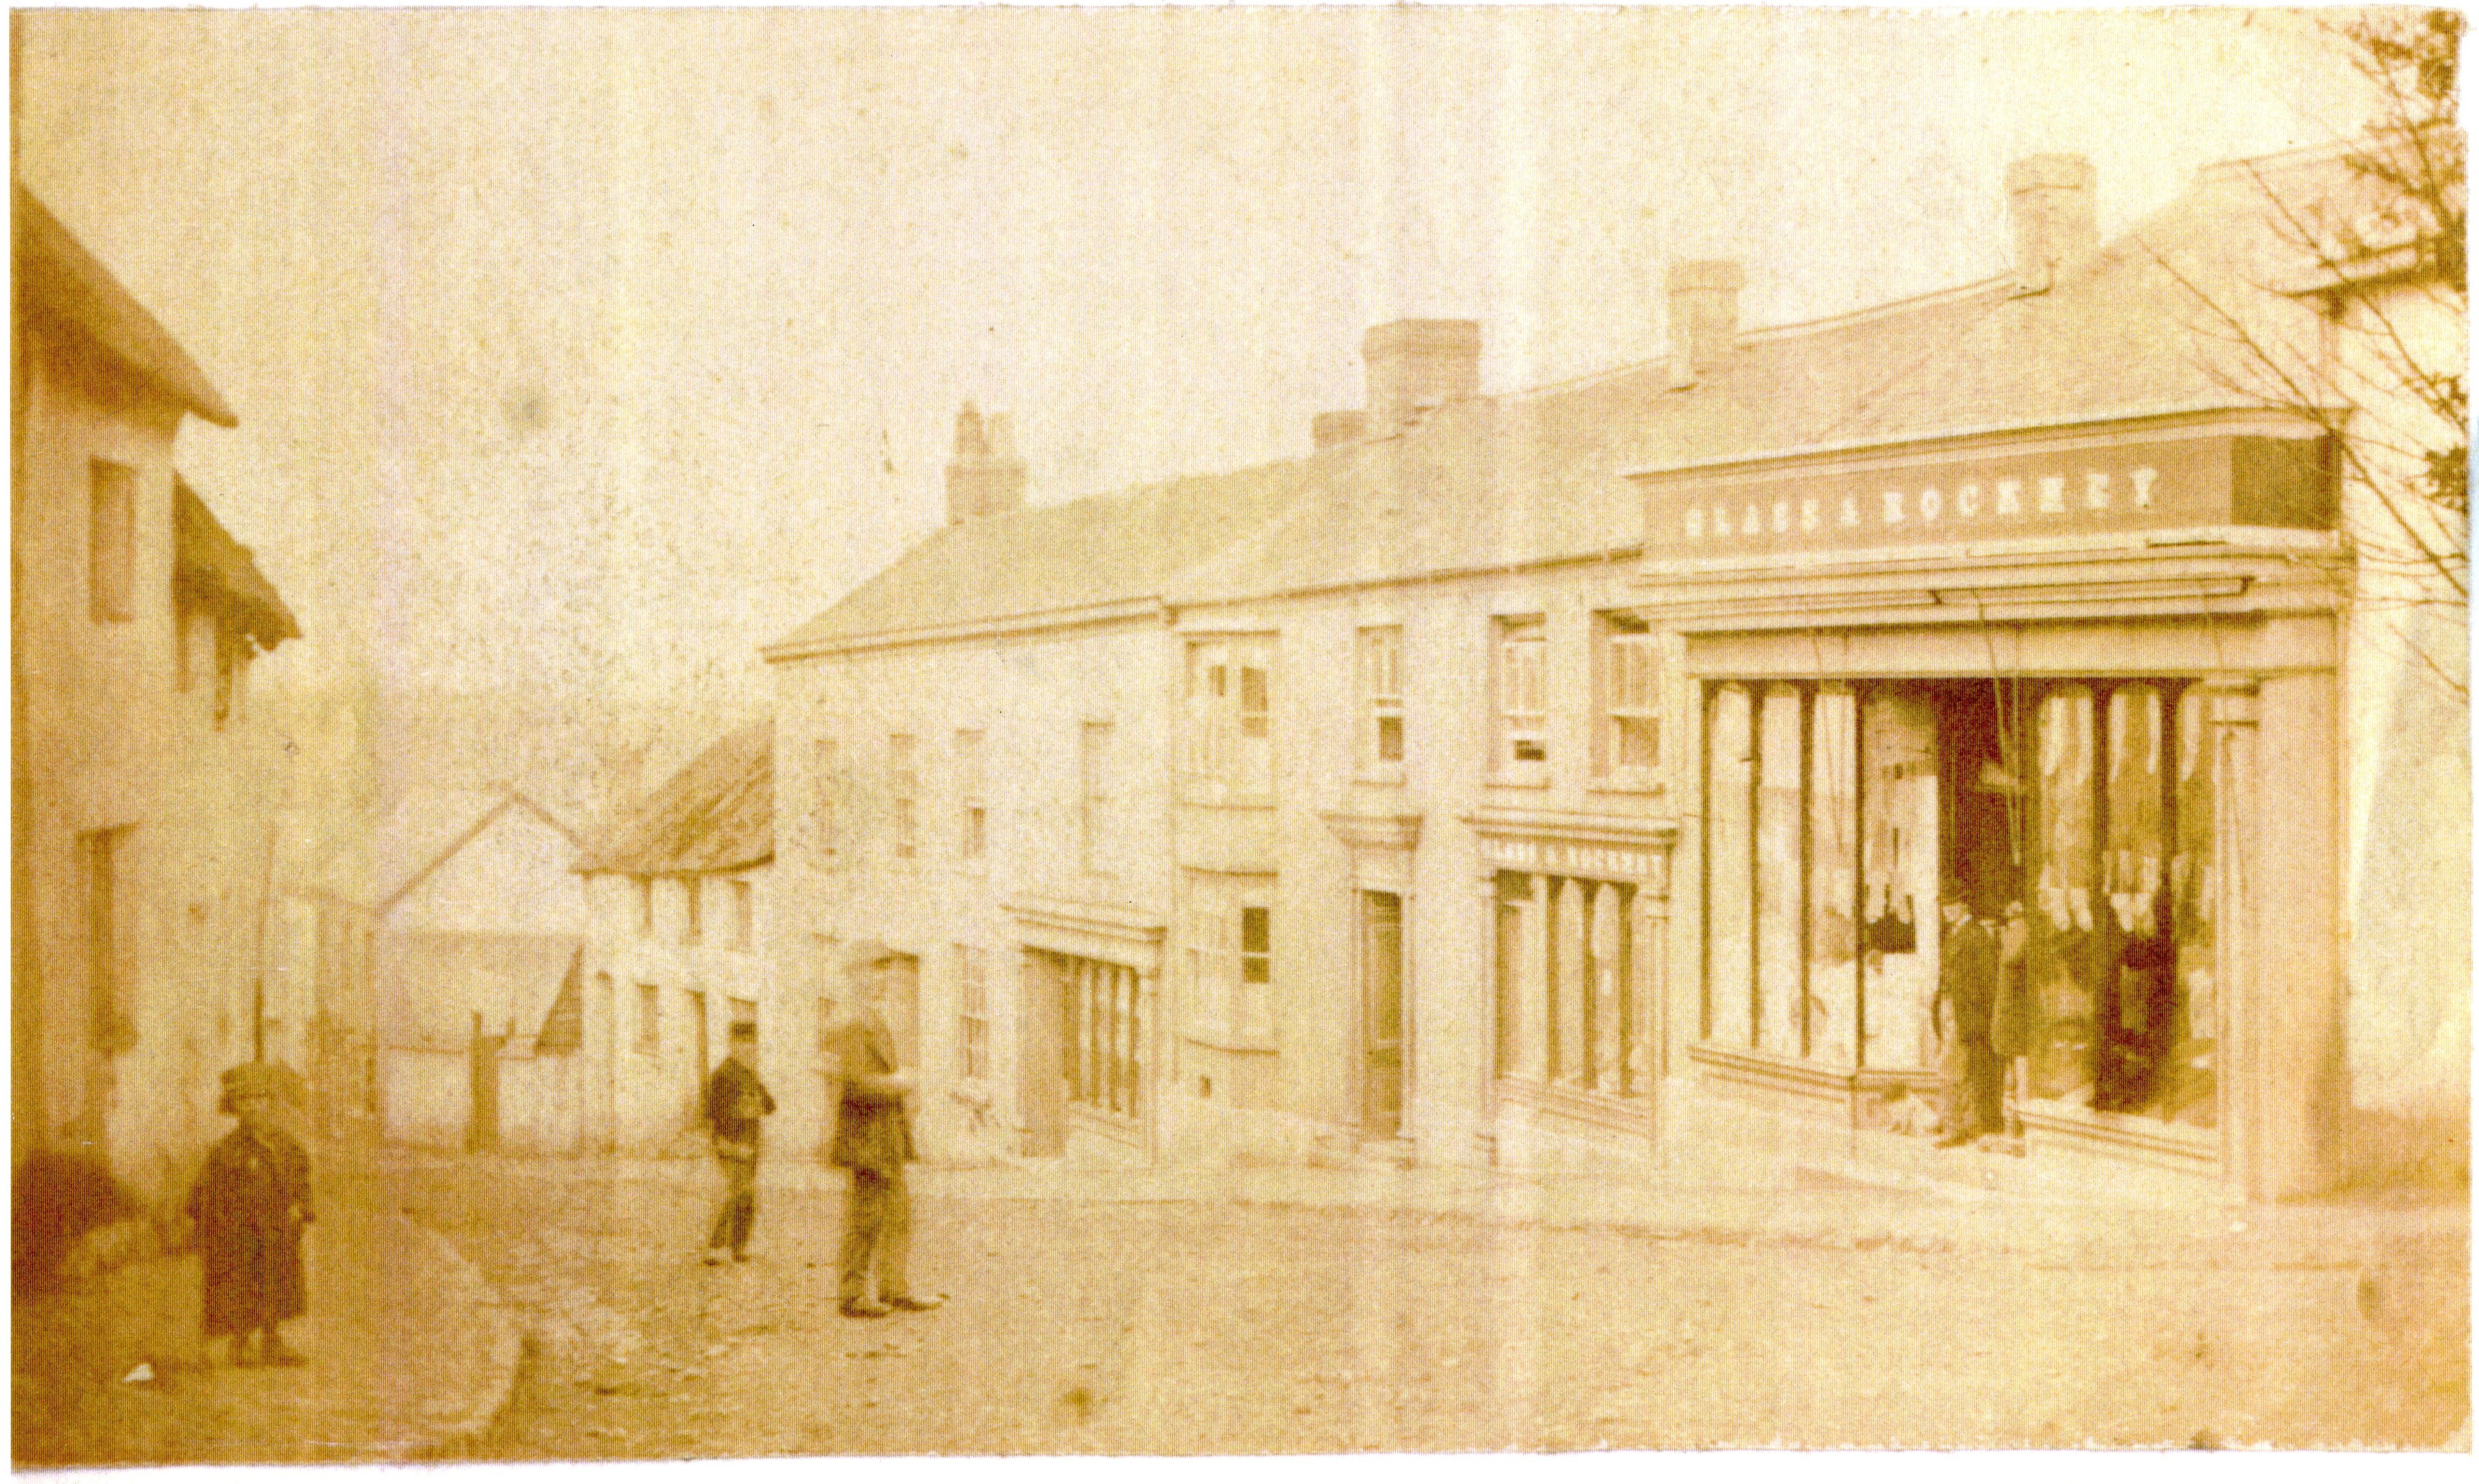 Market St c. 1875